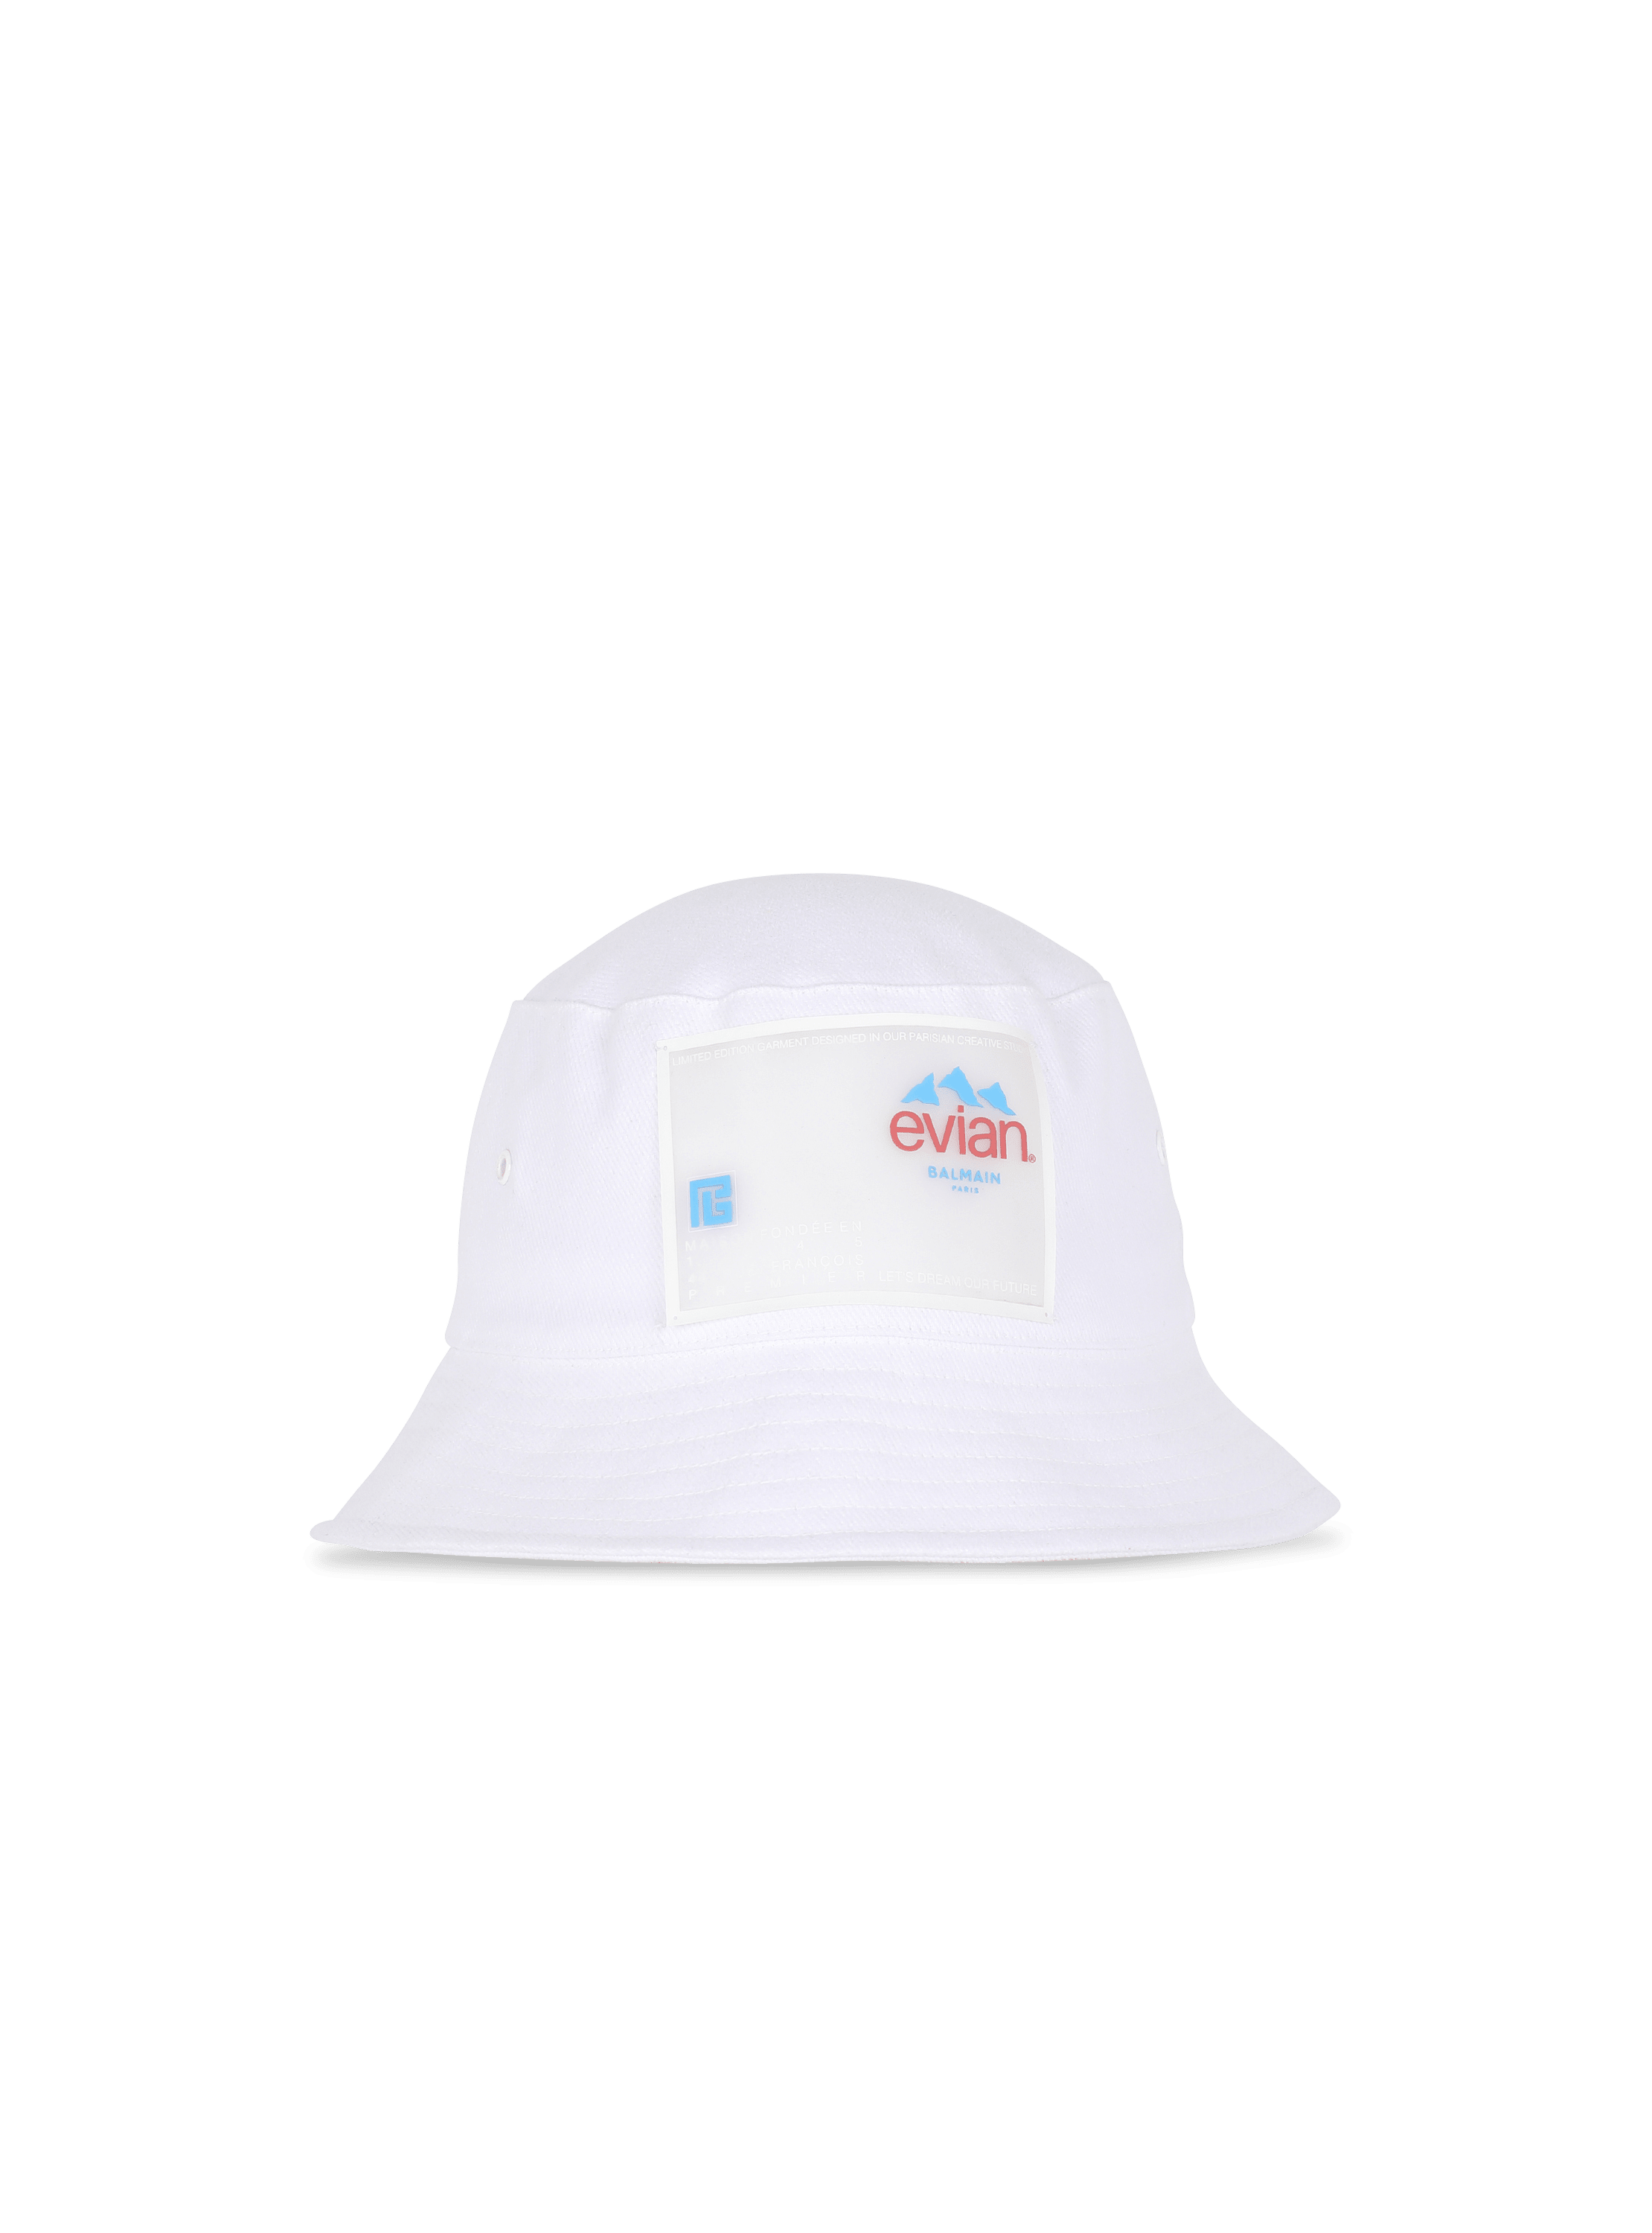 Balmain x Evian - Sombrero de pescador